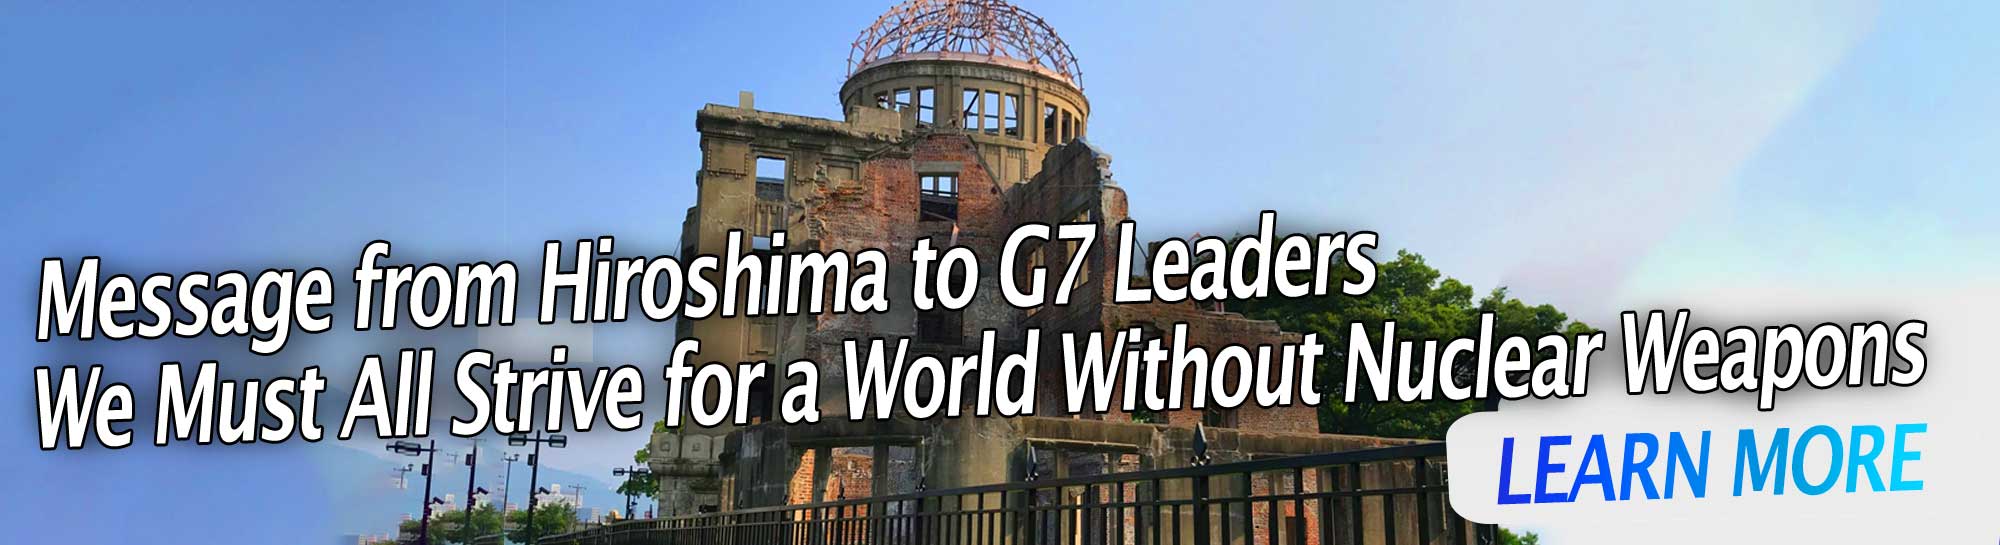 Послание от Хирошима до лидерите на Г-7: Всички трябва да се стремим към свят без ядрени оръжия